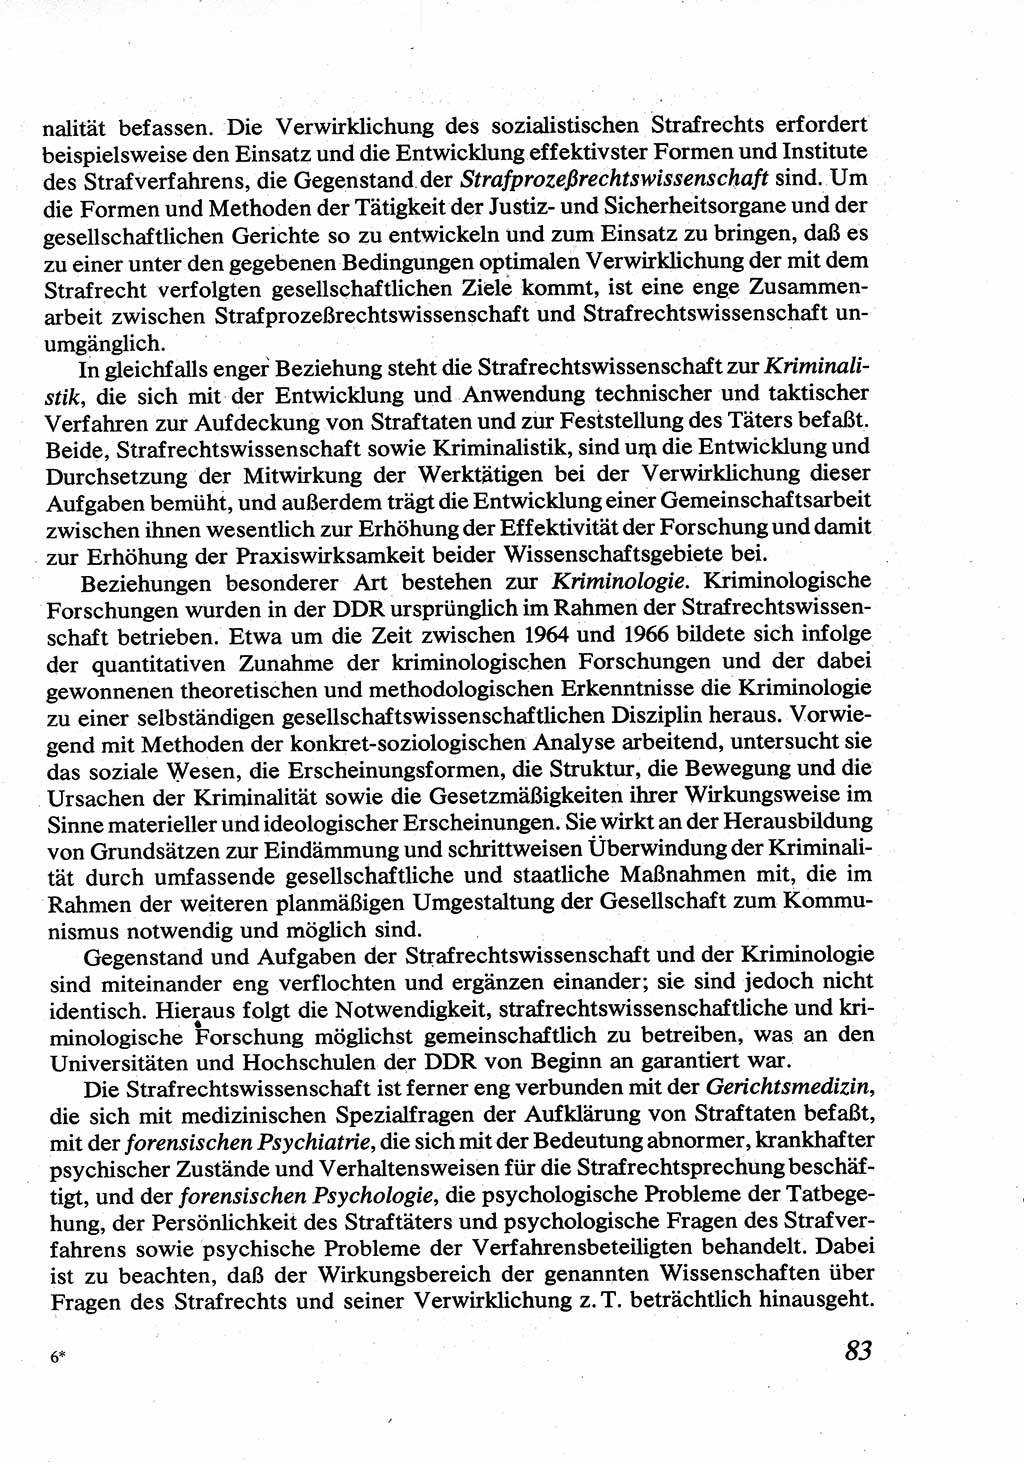 Strafrecht [Deutsche Demokratische Republik (DDR)], Allgemeiner Teil, Lehrbuch 1976, Seite 83 (Strafr. DDR AT Lb. 1976, S. 83)